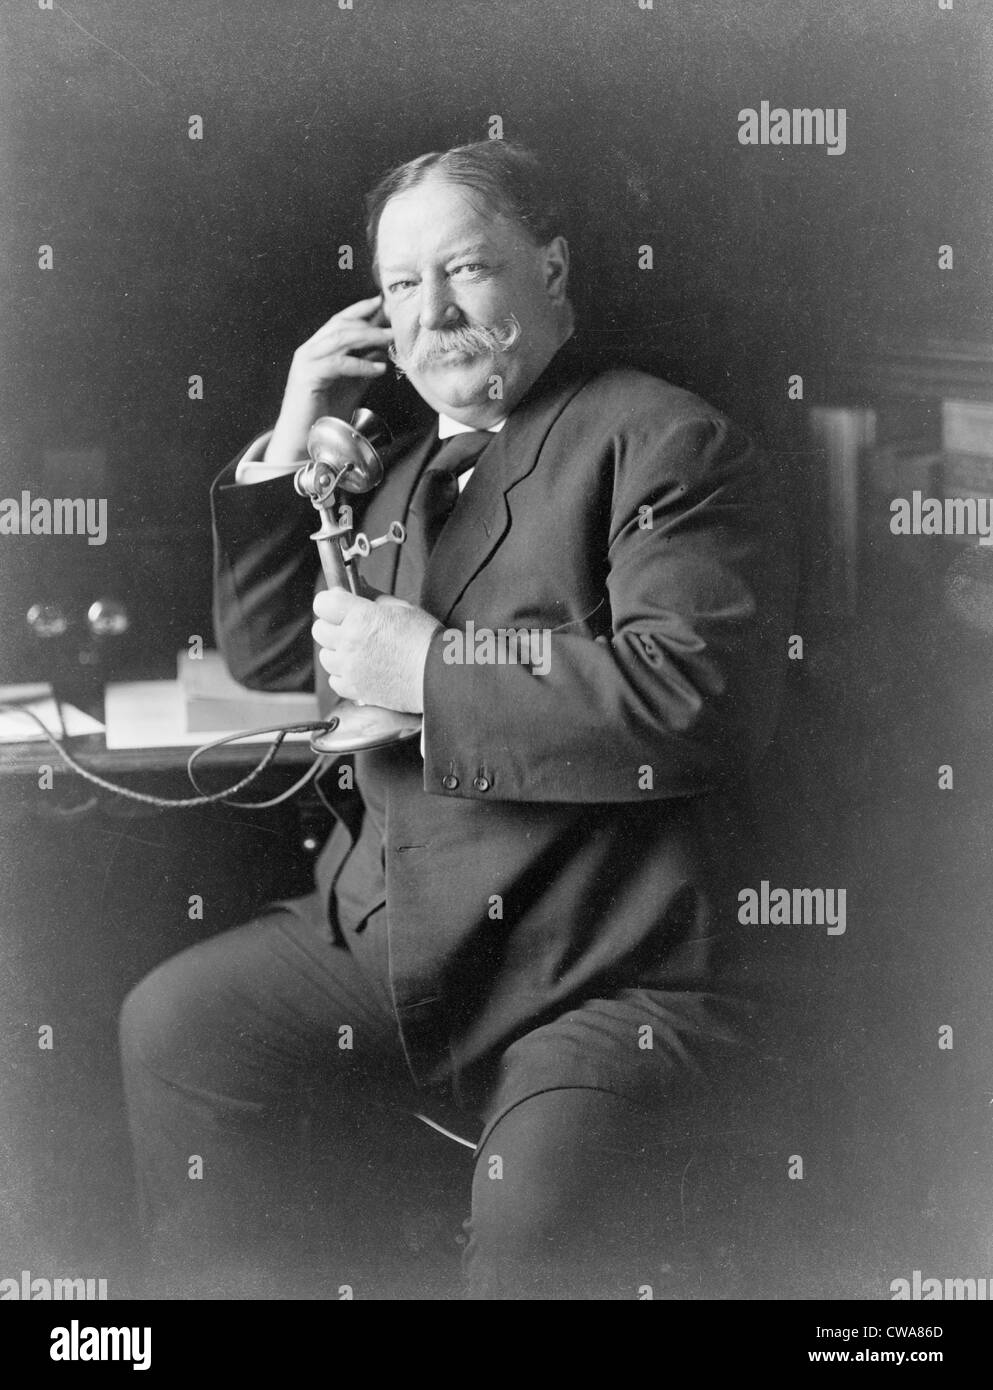 Le président William Taft (1857-1930) à l'aide du téléphone au cours de 1908, l'année de son élection à la présidence des États-Unis. Banque D'Images